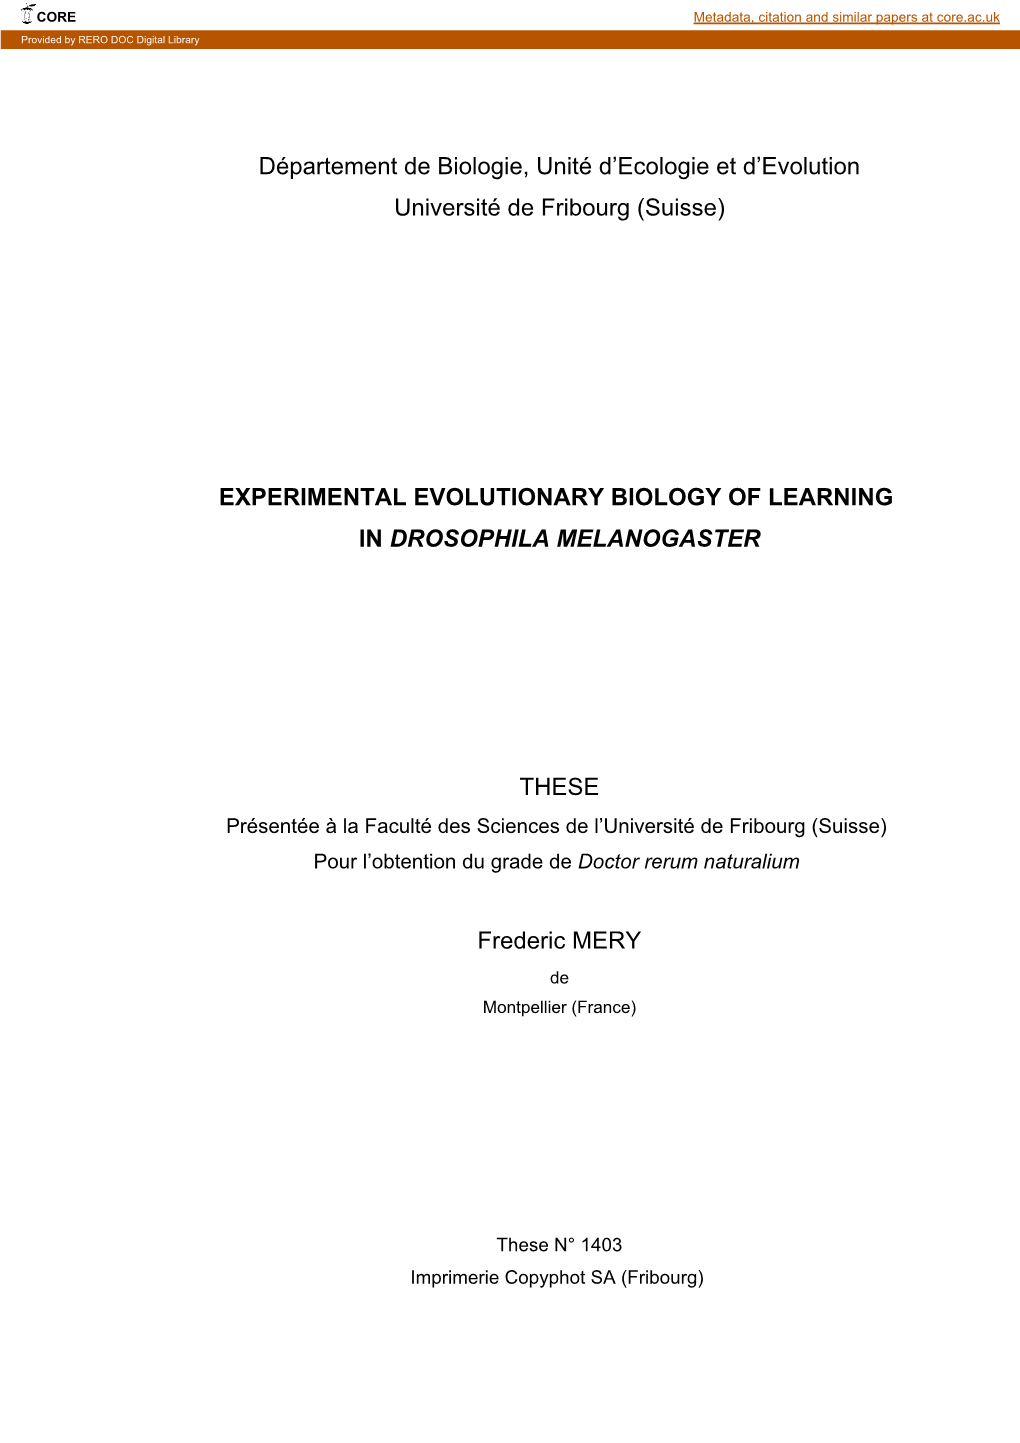 Experimental Evolutionary Biology of Learning in Drosophila Melanogaster